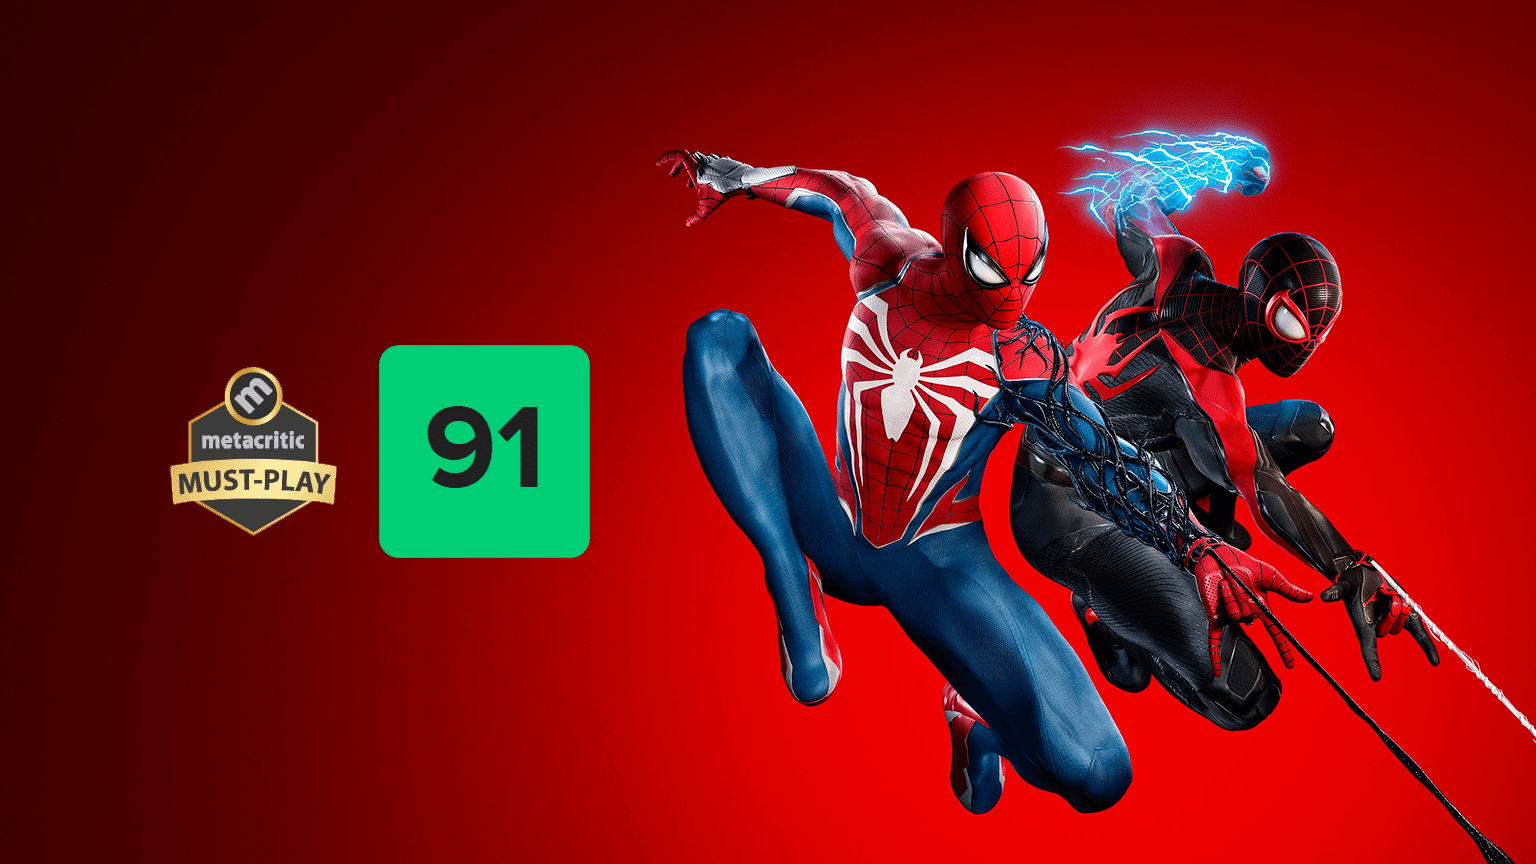 Metacritic - Marvel's Spider-Man 2 [PS5 - 91]